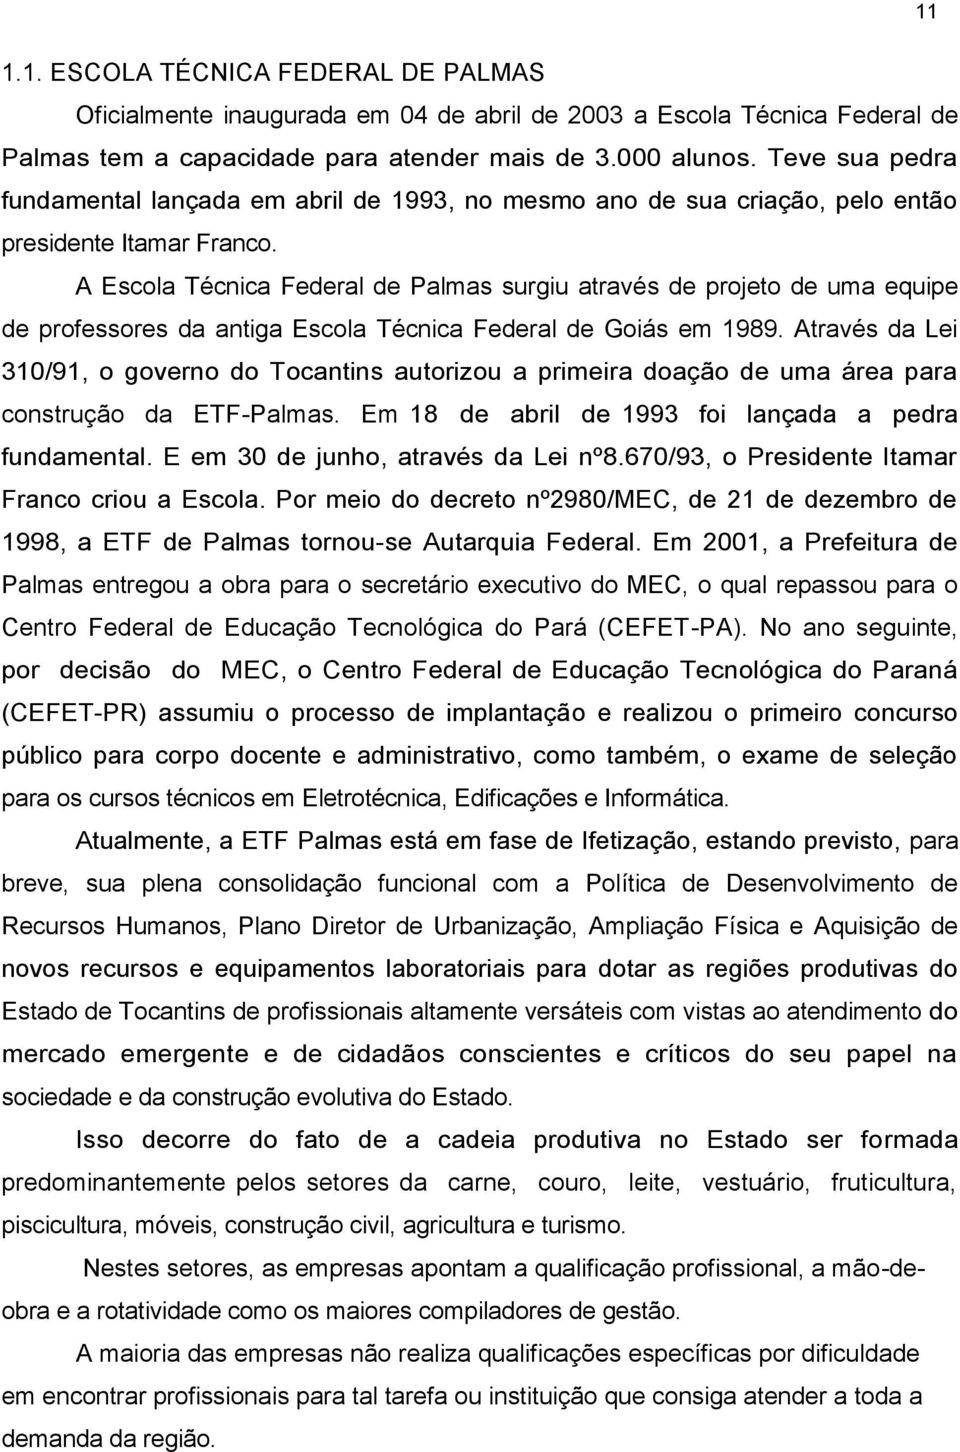 A Escola Técnica Federal de Palmas surgiu através de projeto de uma equipe de professores da antiga Escola Técnica Federal de Goiás em 1989.